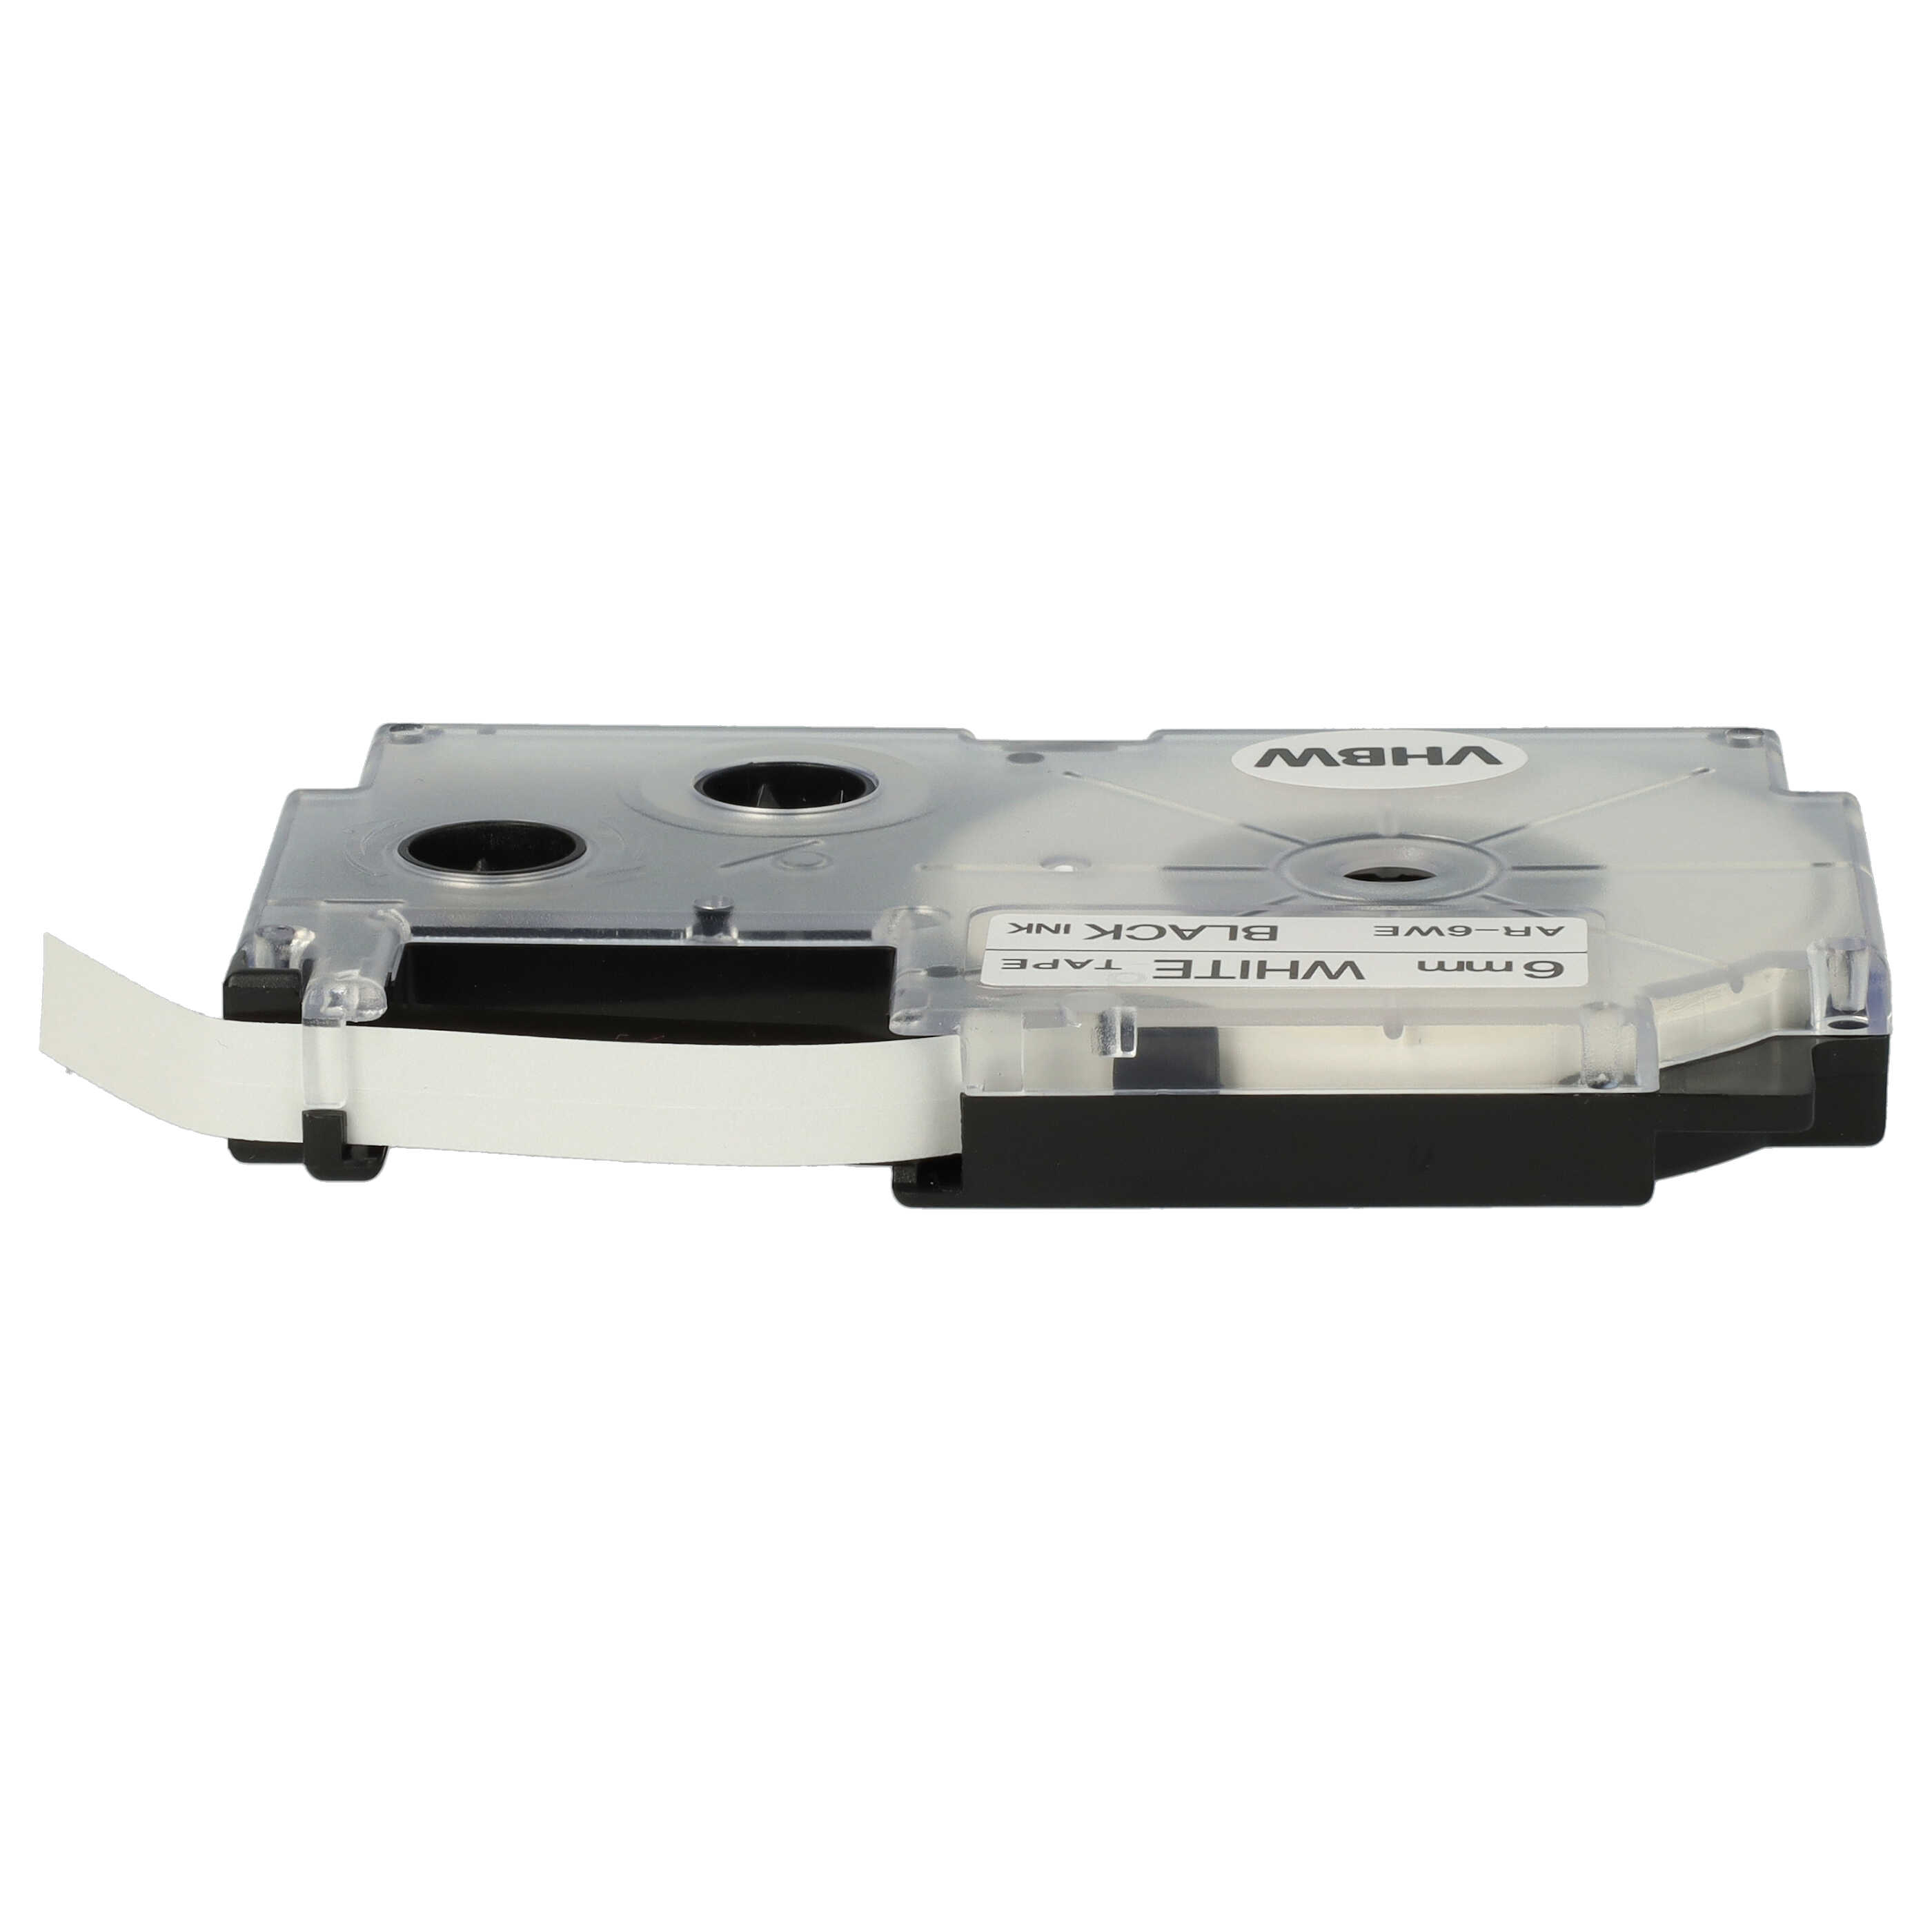 10x Cassettes à ruban remplacent Casio XR-6WE1, XR-6WE - 6mm lettrage Noir ruban Blanc